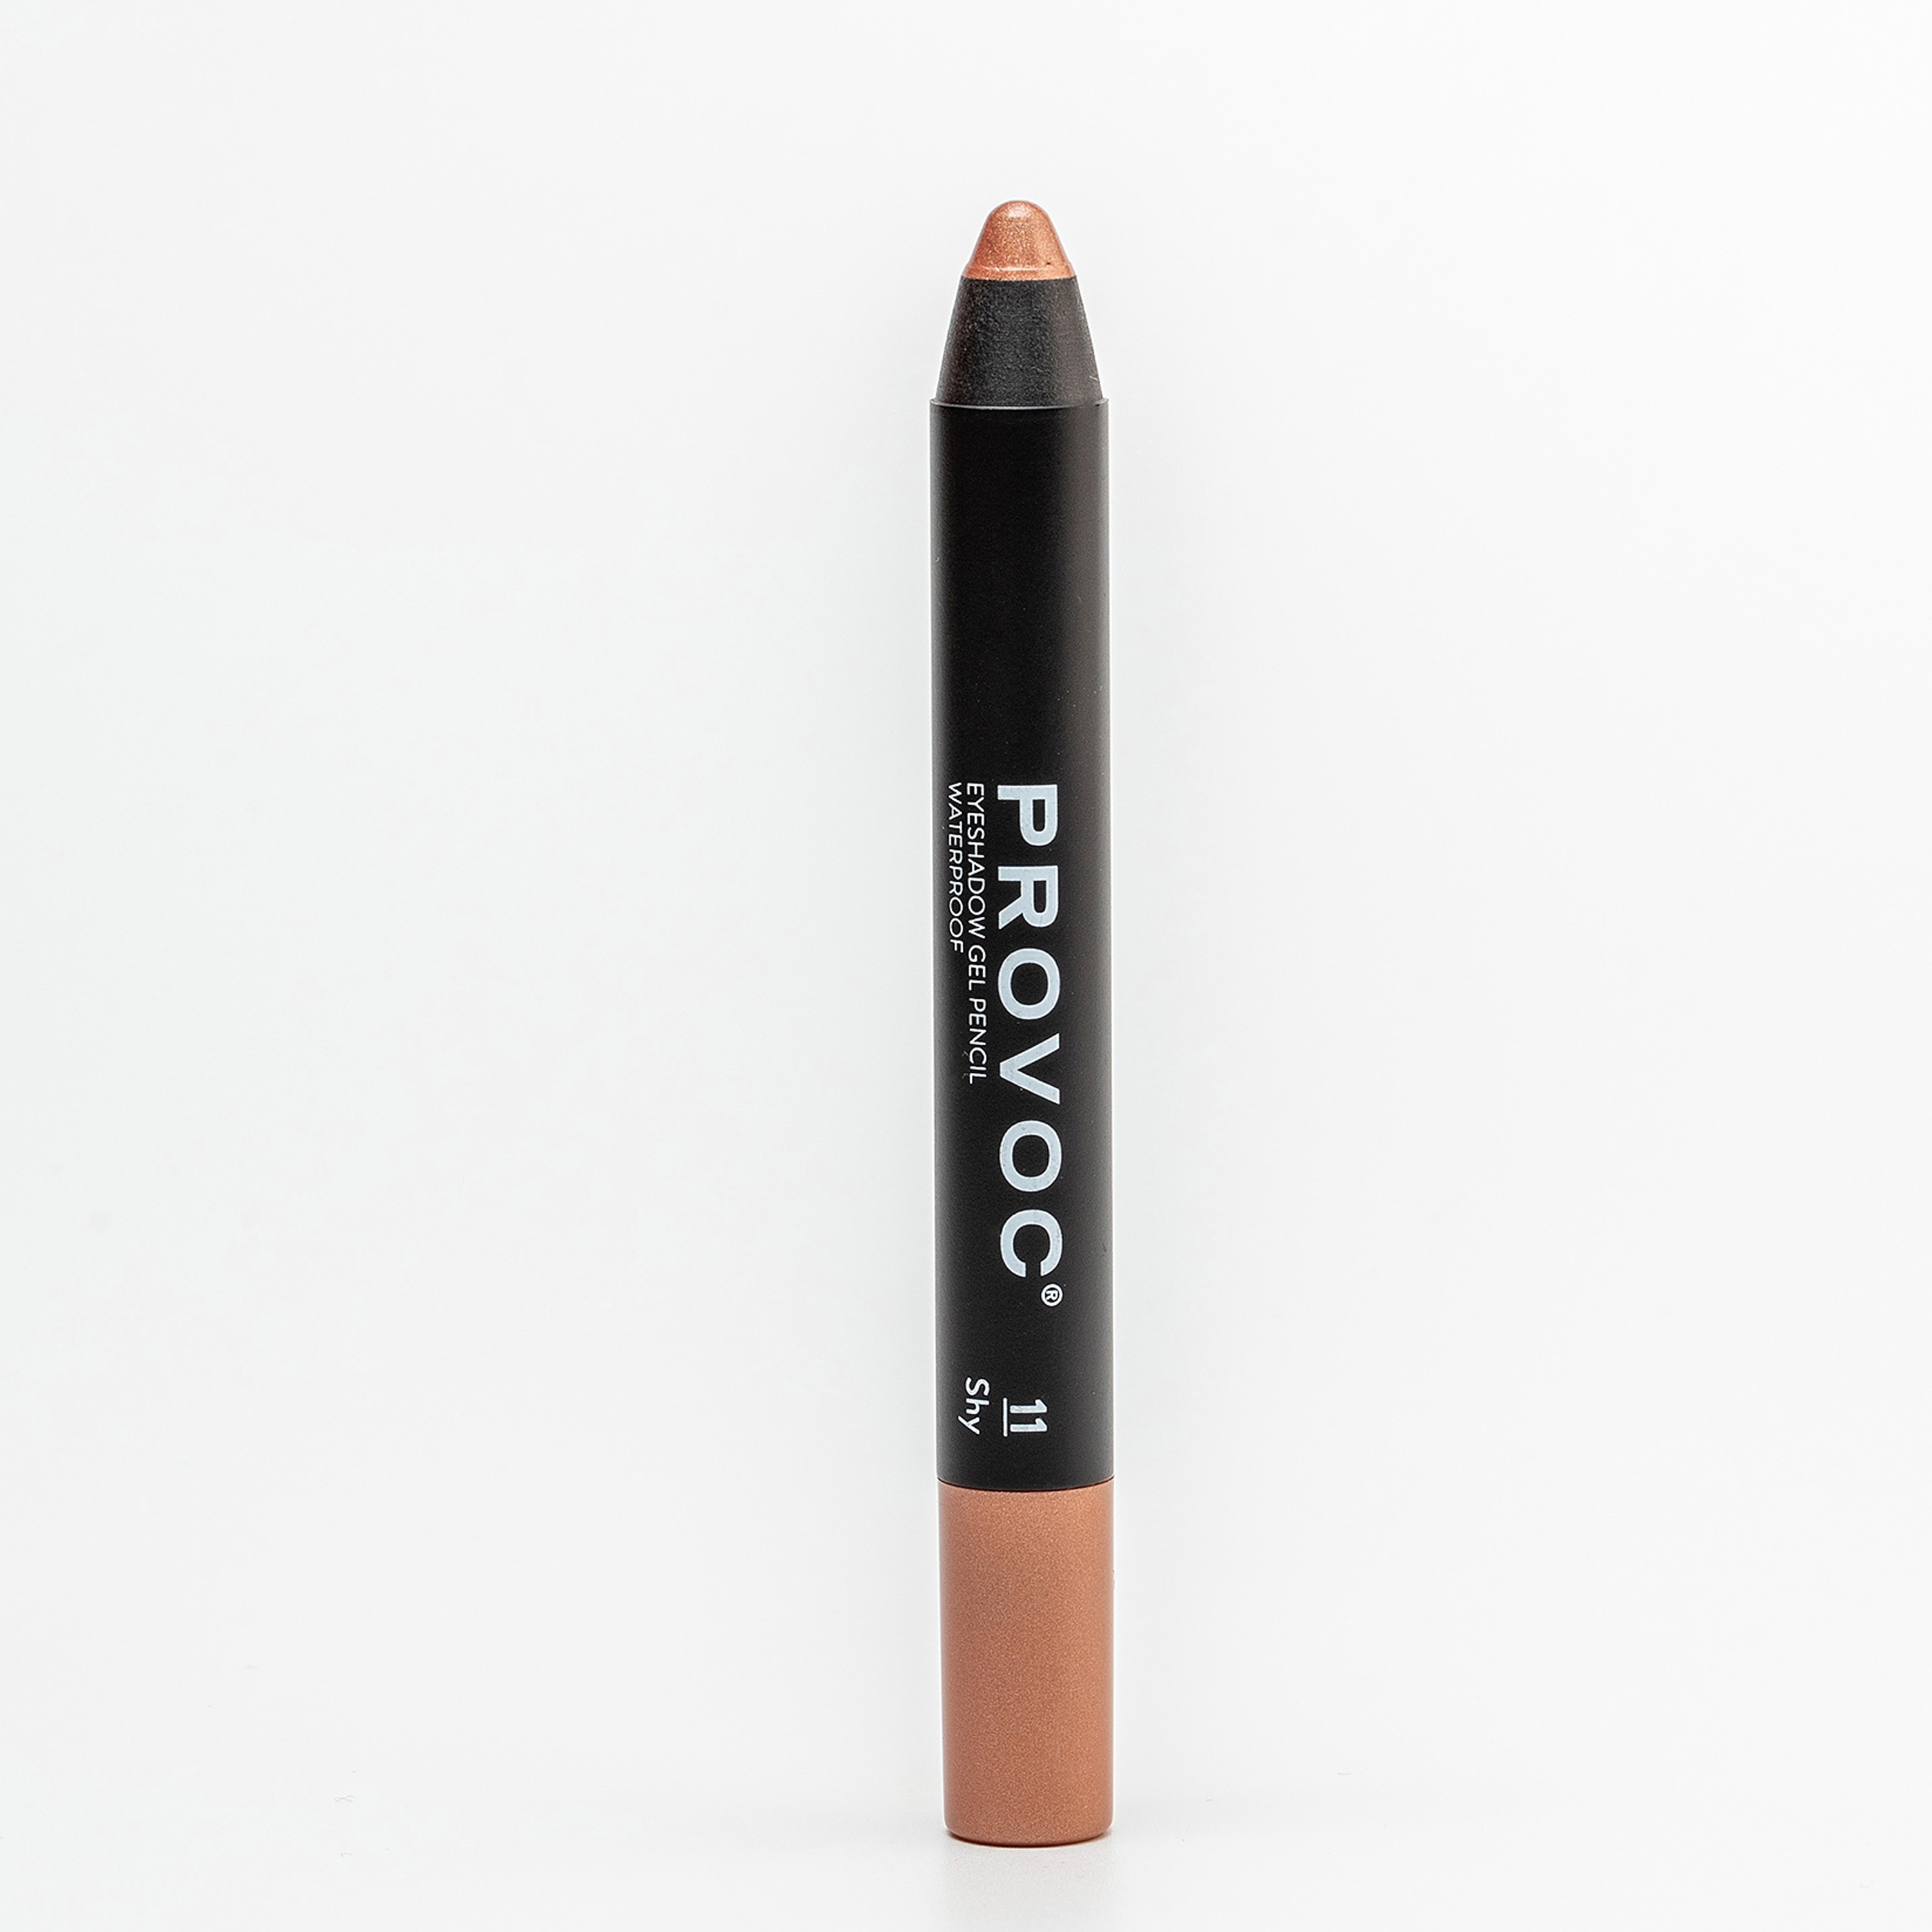 Тени-карандаш PROVOC Eyeshadow Pencil L водостойкие, шиммер 11 персиковый, 2,3 г тени карандаш водостойкие eyeshadow pencil pvep06 6 темный шоколад матовый 1 шт